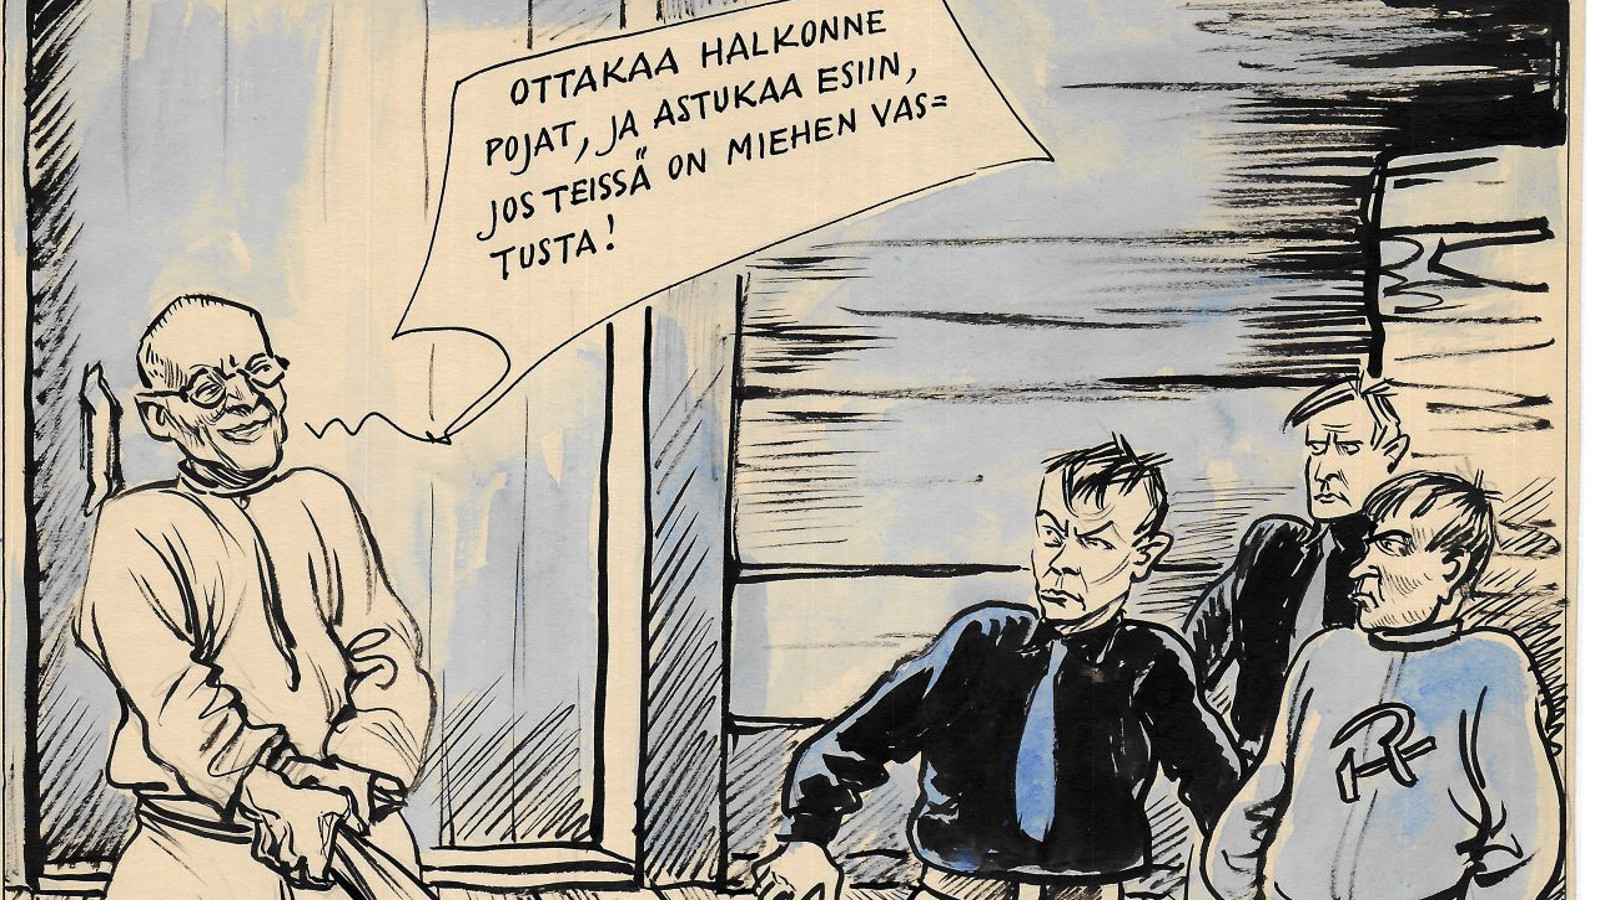 Kuvassa on piirroksena vasemmalla Kekkonen ja hänen puhekuplansa: Ottakaa halkonne, ja astukaa esiin, jos teissä on miehen vastusta! Vasemmalla on kolme miestä. Kahdella on mustat paidat ja sininen kravatti.  Yhdellä on paita, jossa on sirppi ja vasara.